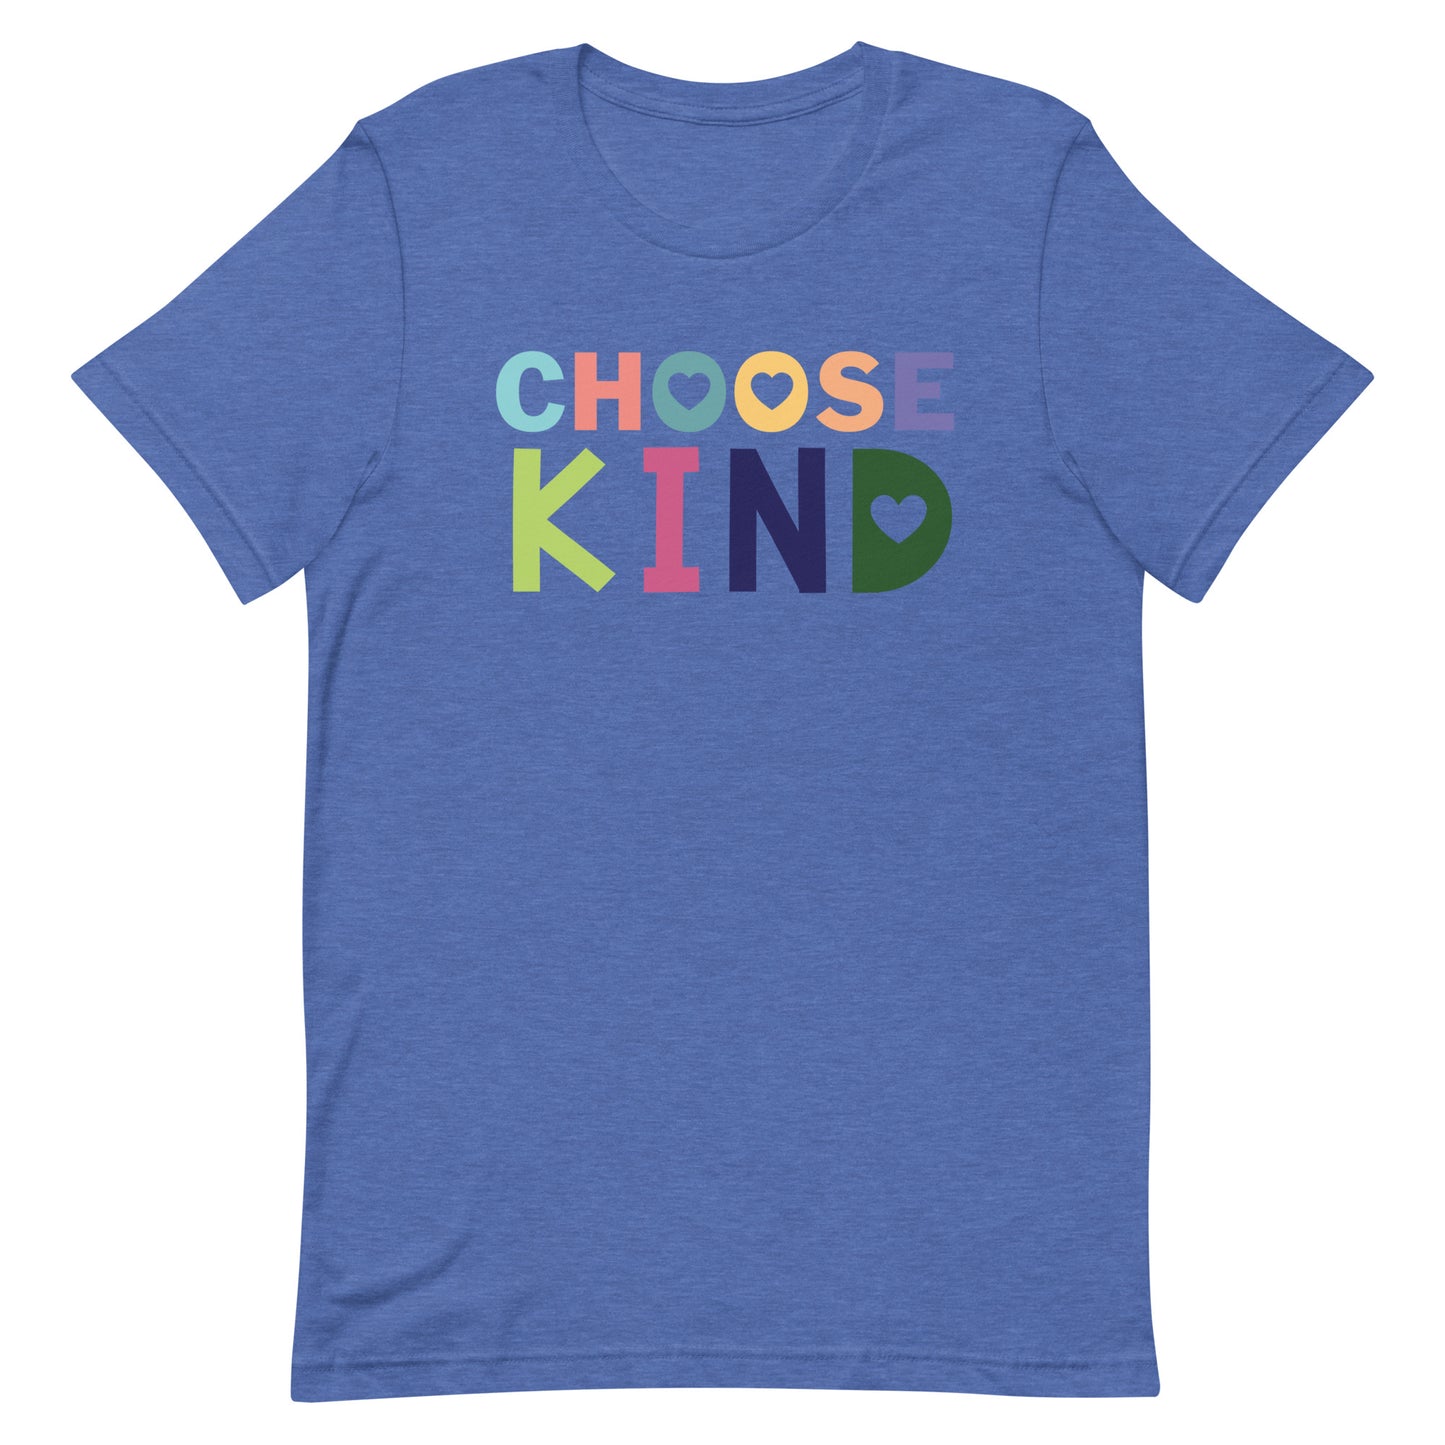 Choose Kind, Kindness Tshirt , Teacher Tshirt, Teacher Shirt, Super-soft Unisex t-shirt, Teacher Appreciation Gift